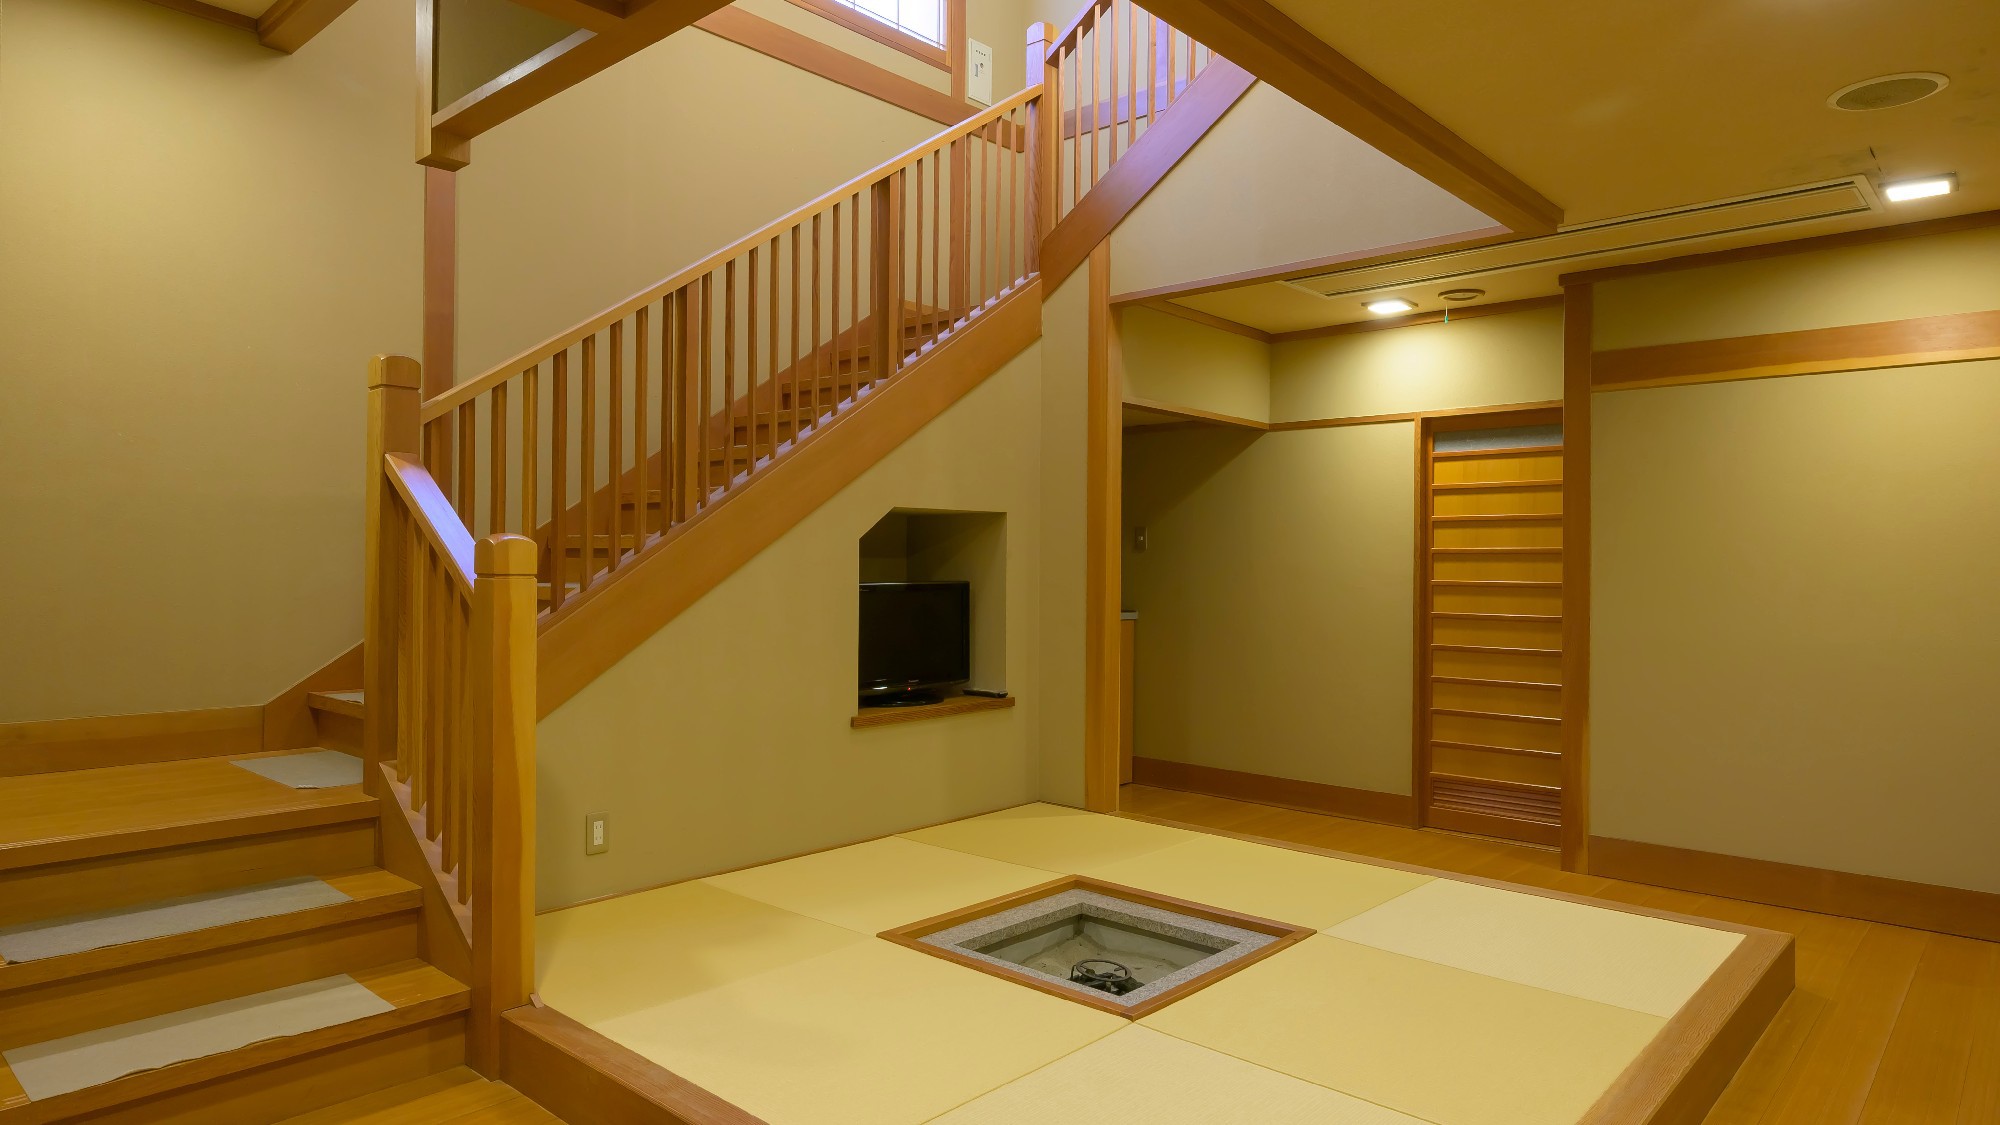 【温泉露天風呂付き離れ】霽海-seikai-階段下には囲炉裏があり、不思議と居心地の良さを感じます